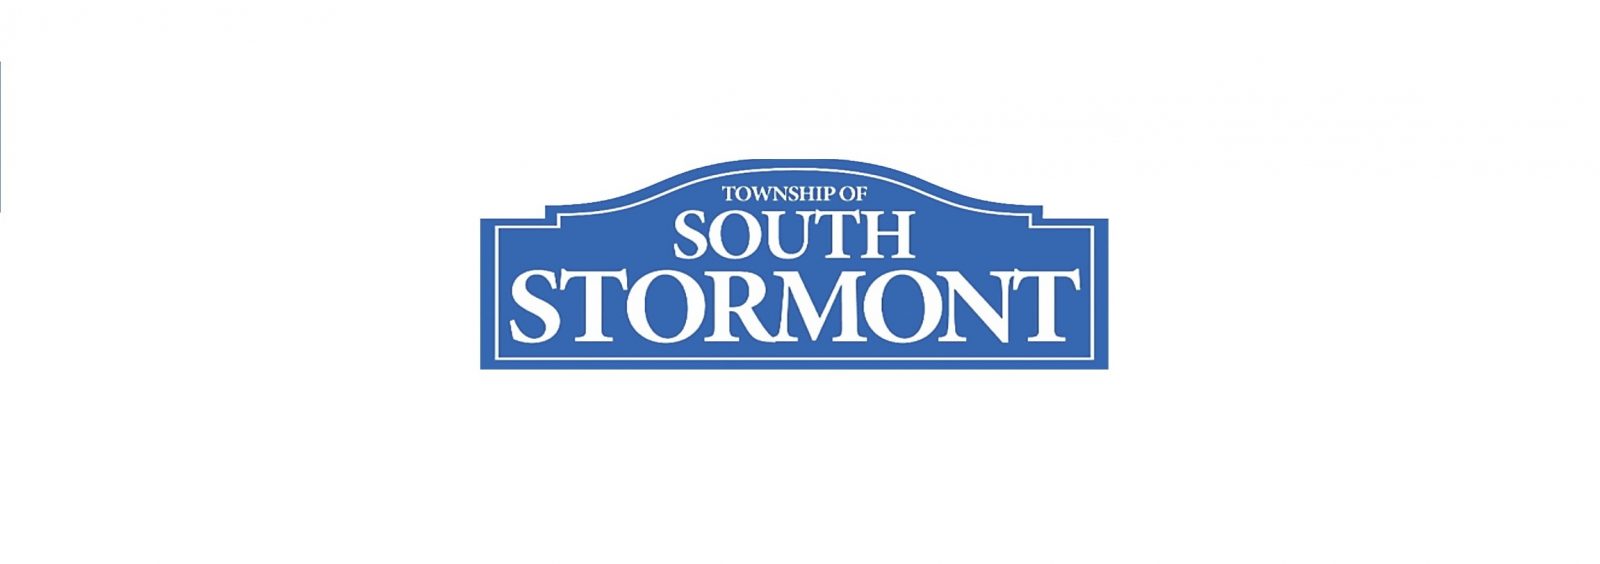 South Stormont implements burn ban